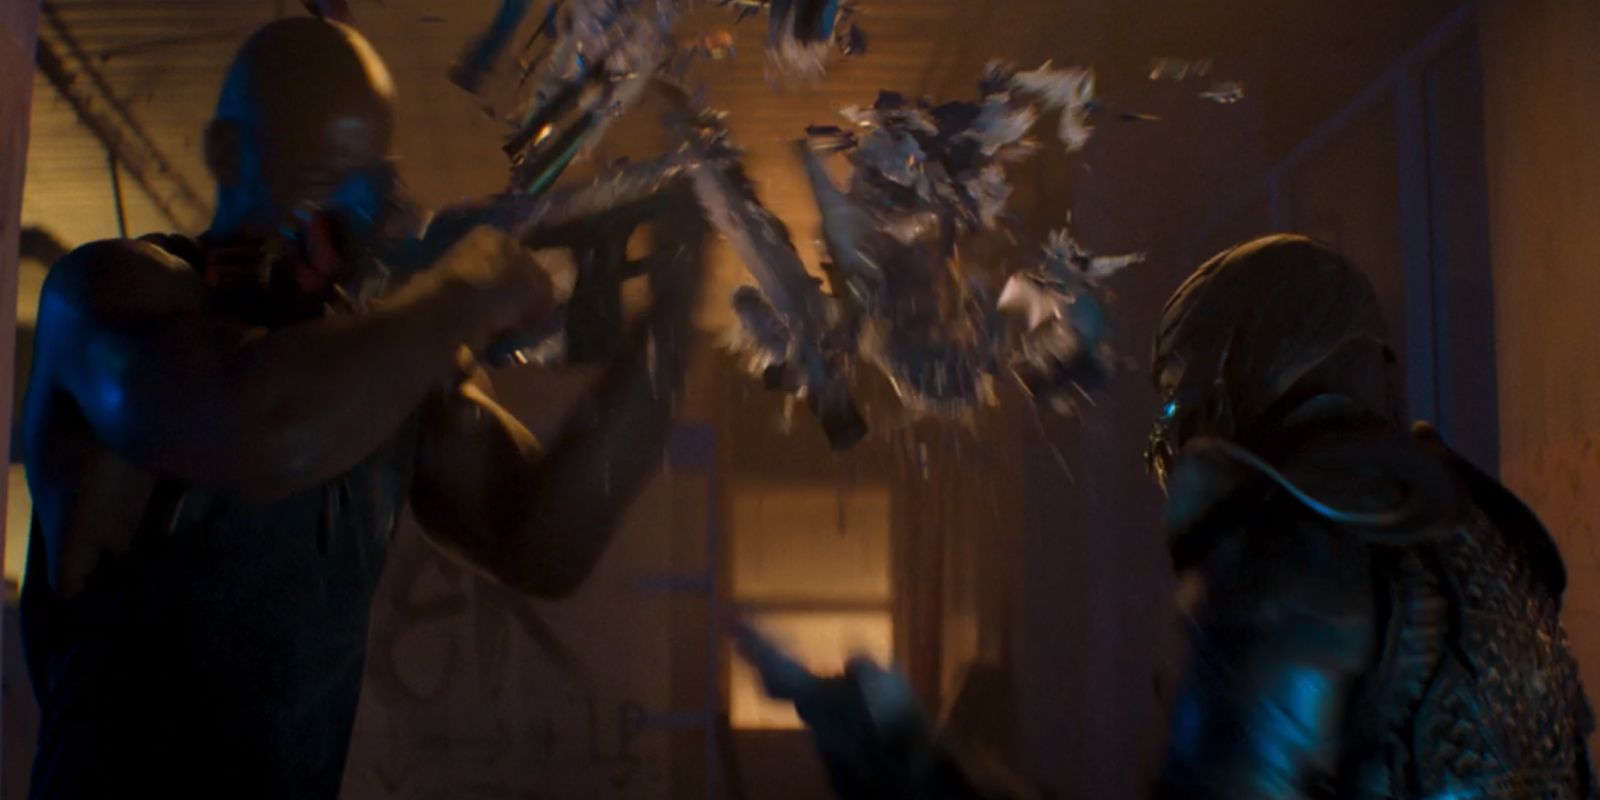 Sub-Zero shattering Jax's combat shotgun in Mortal Kombat 2021